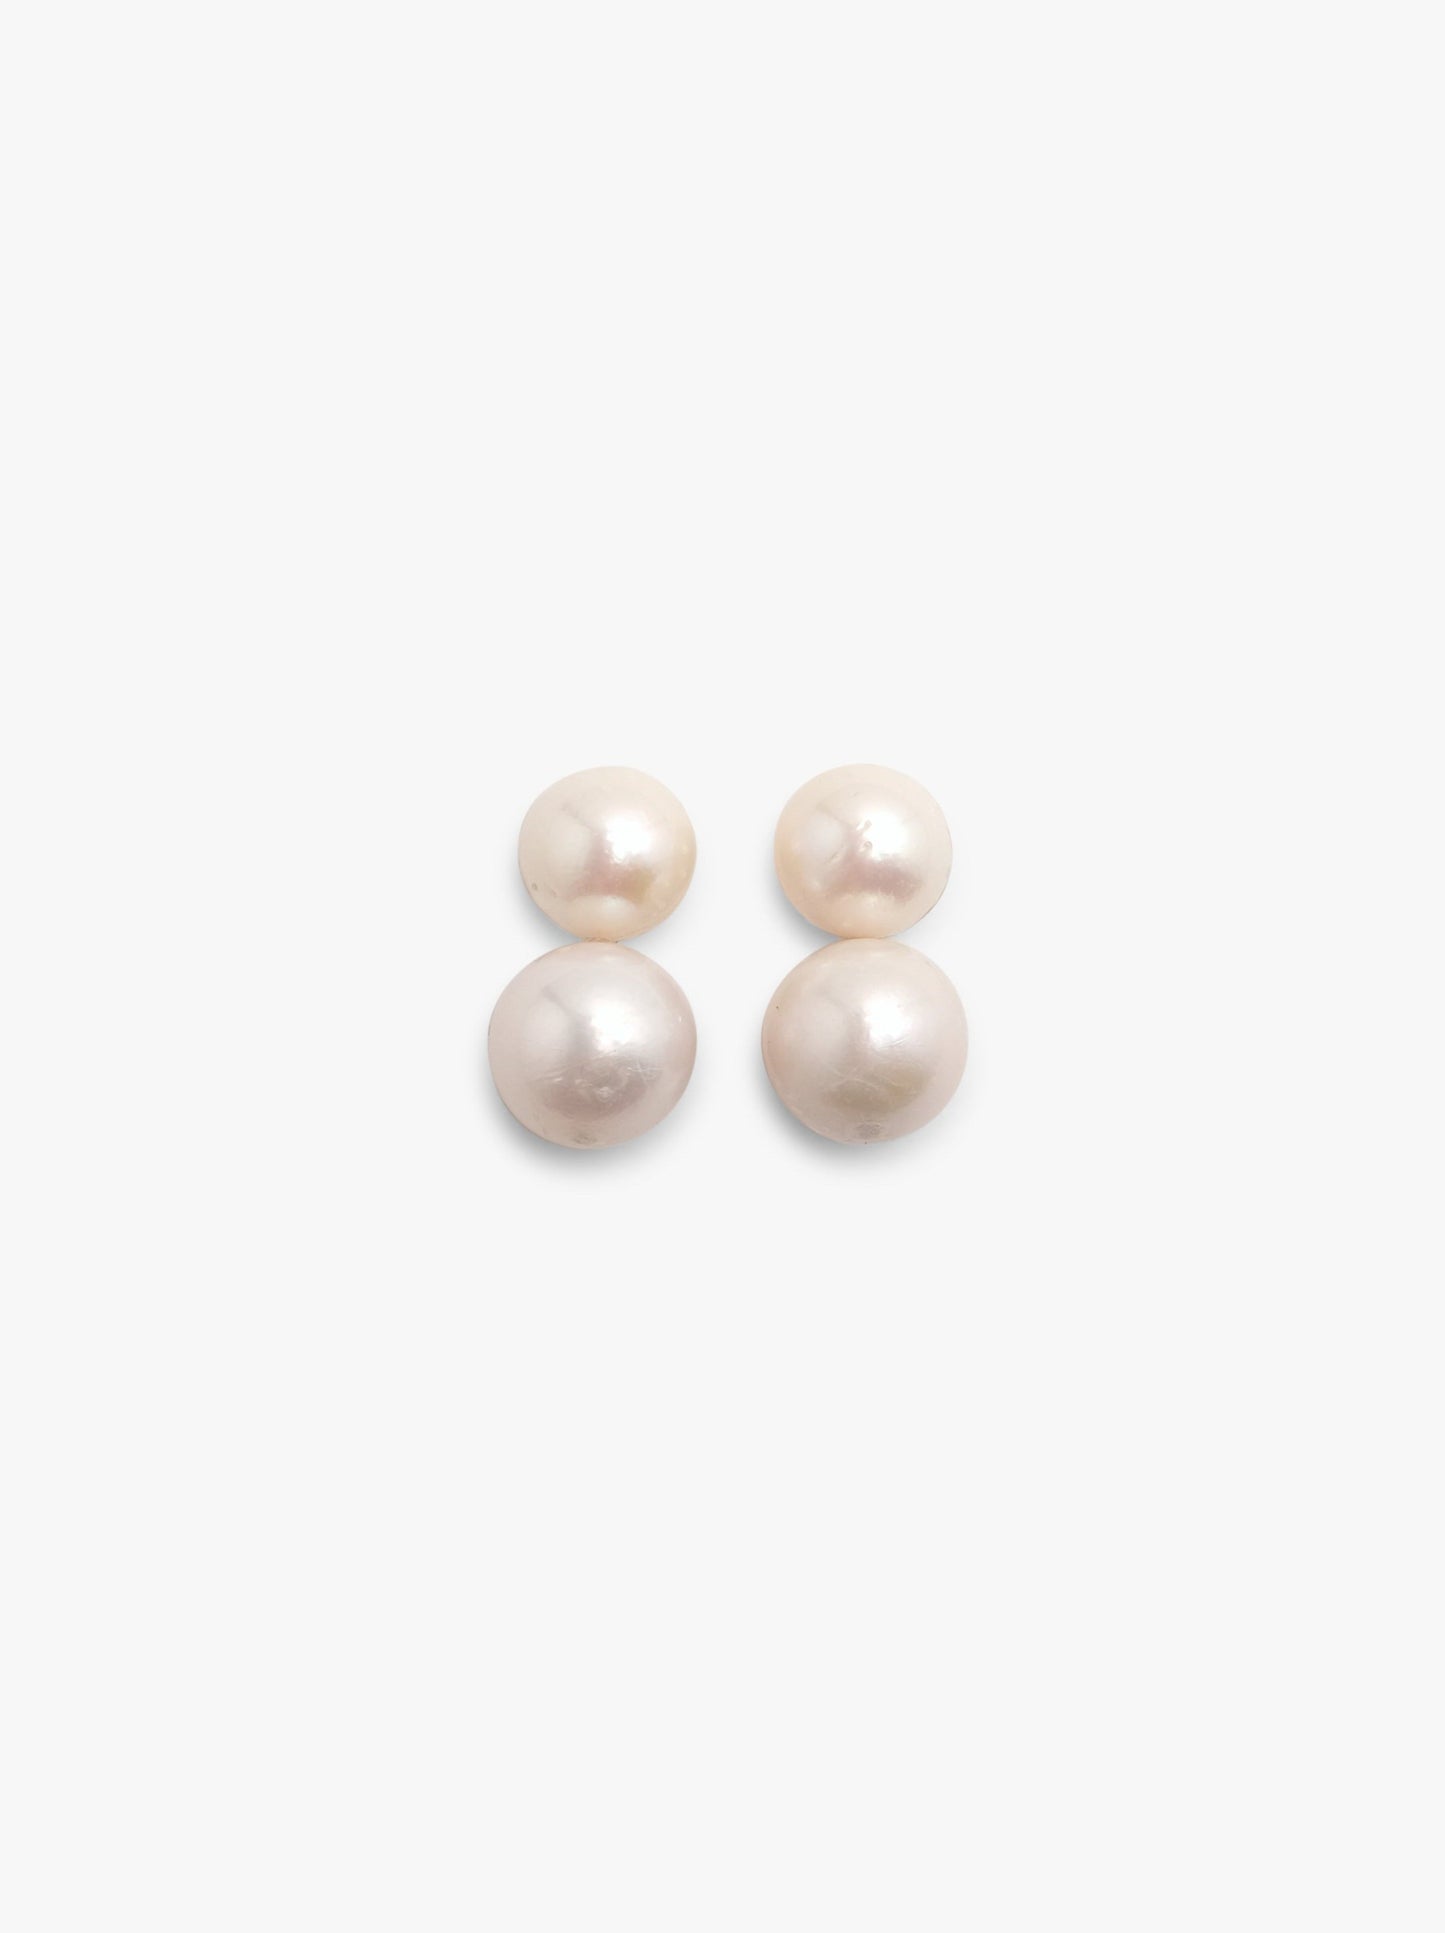 Stud earrings: pearls, horn